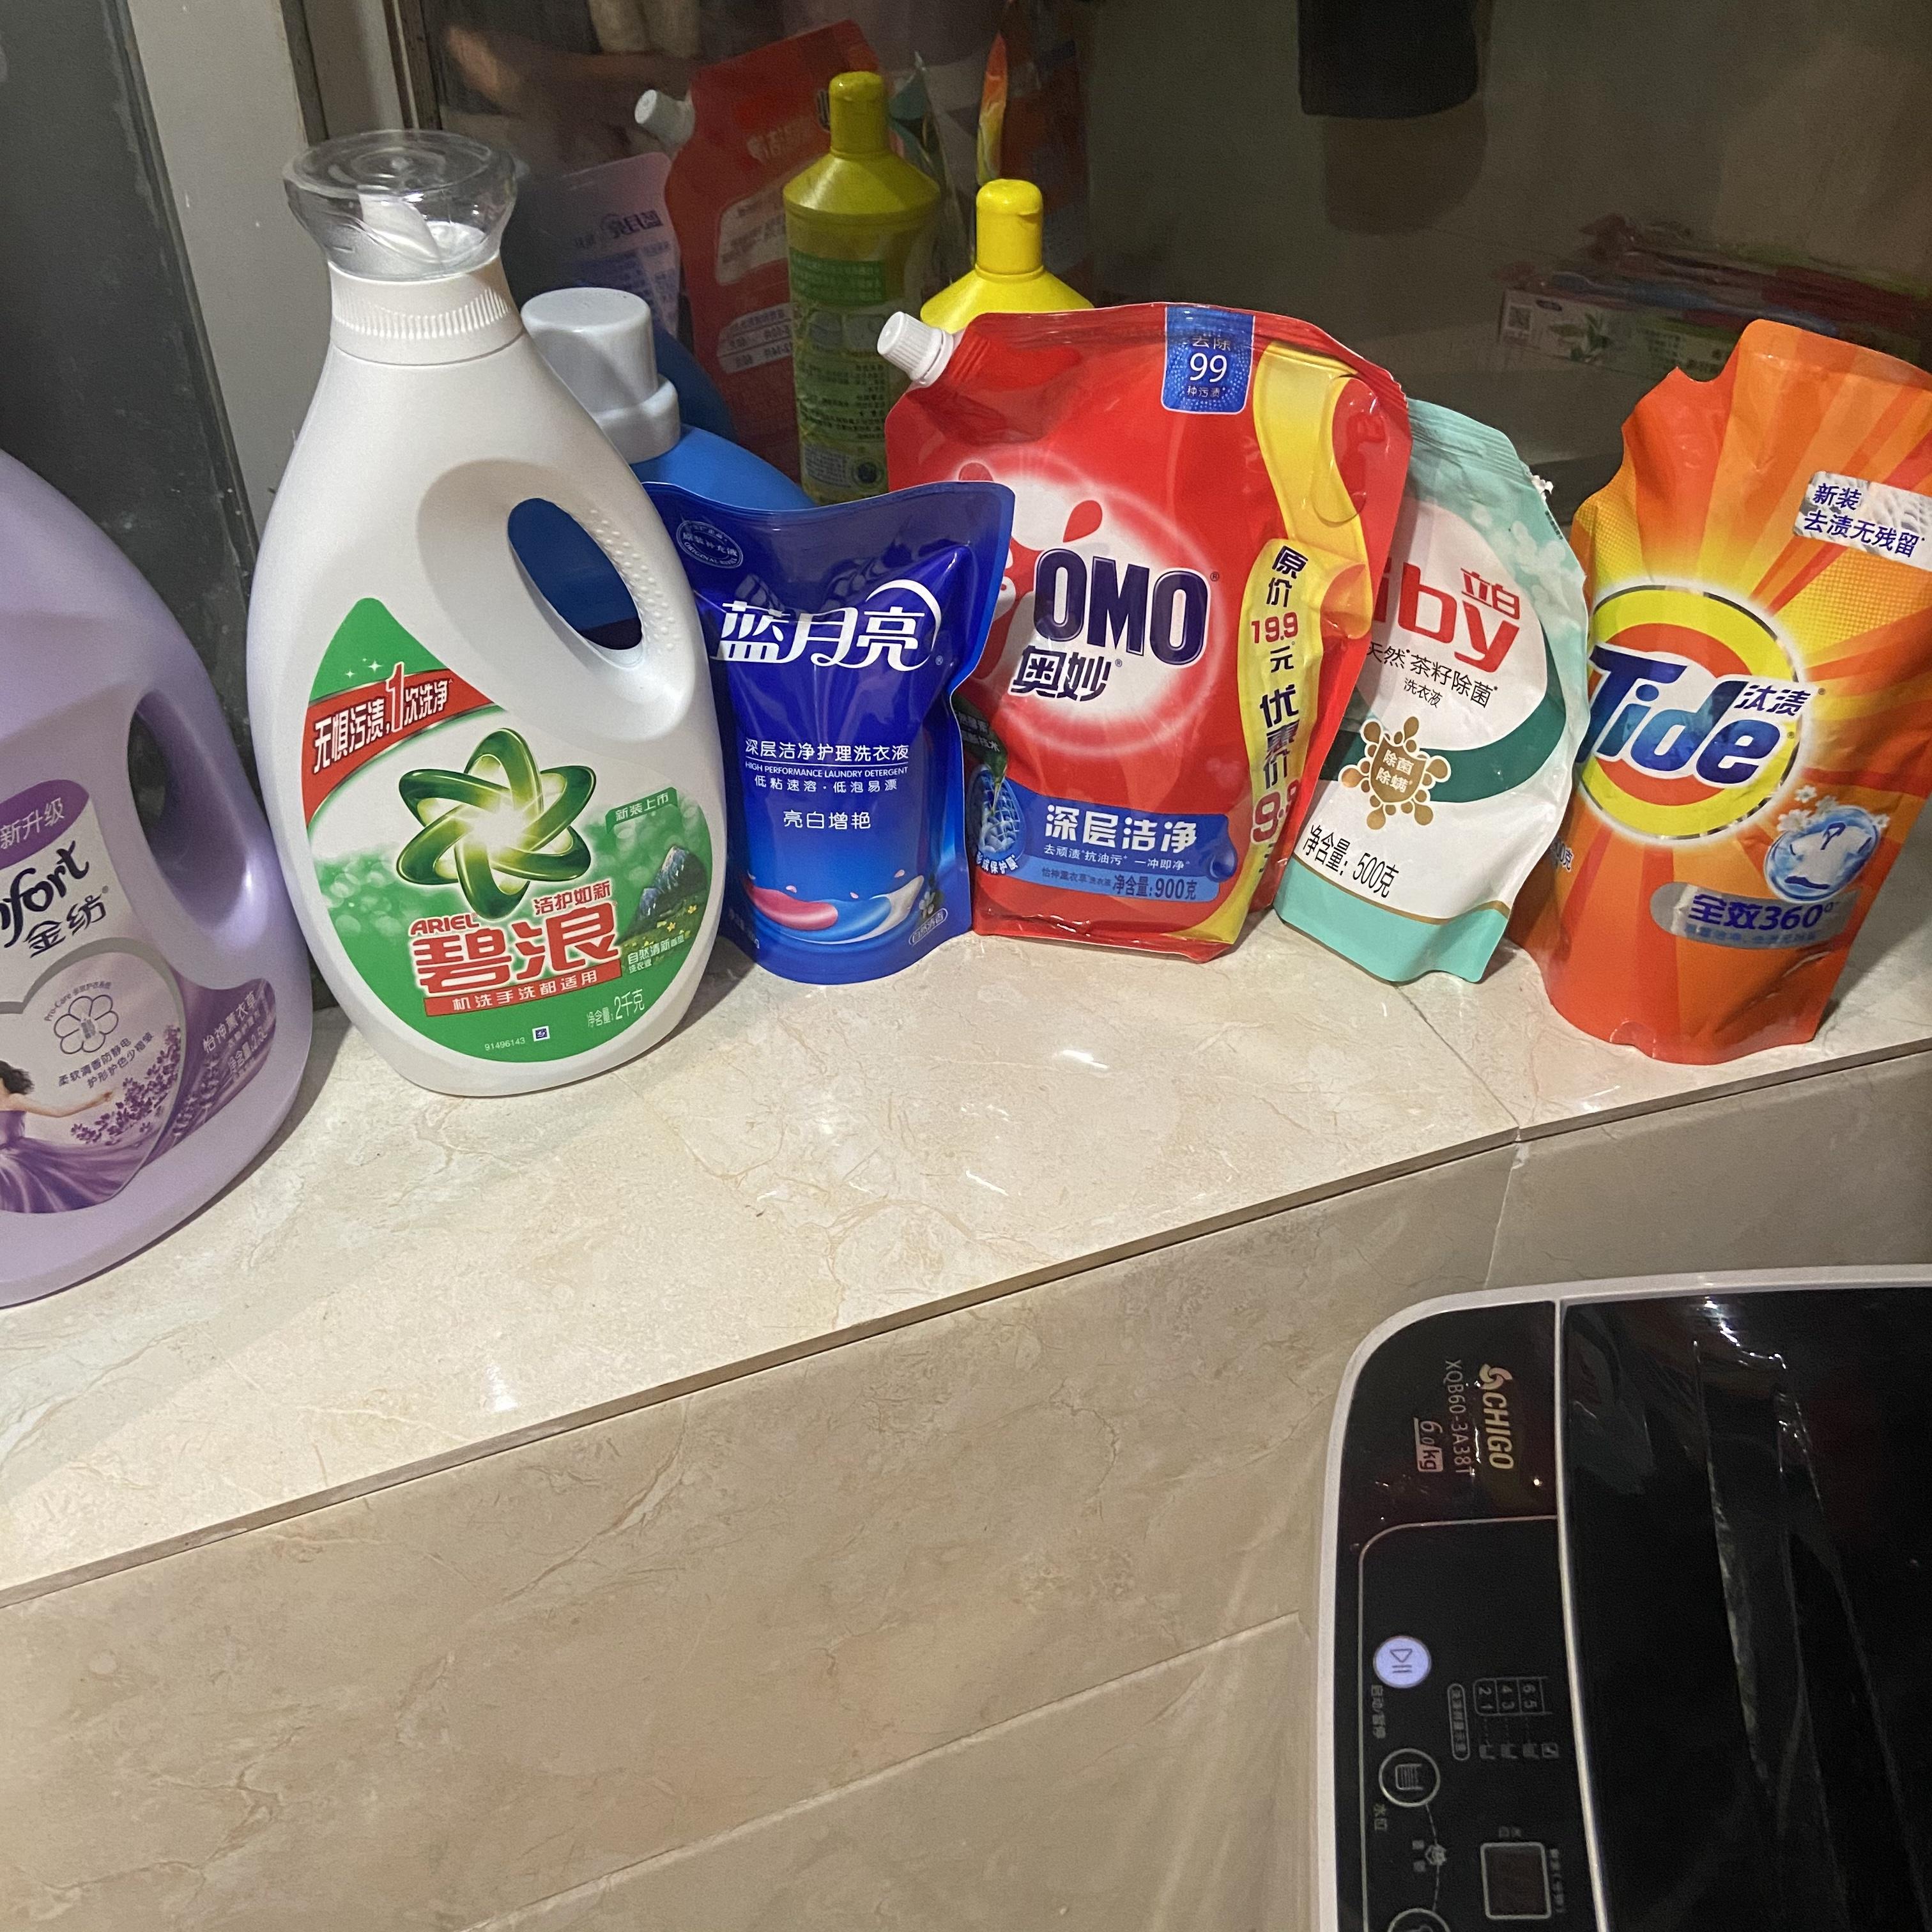 洗衣液、洗衣粉、洗衣皂哪个效果更好？ - 阿里头条